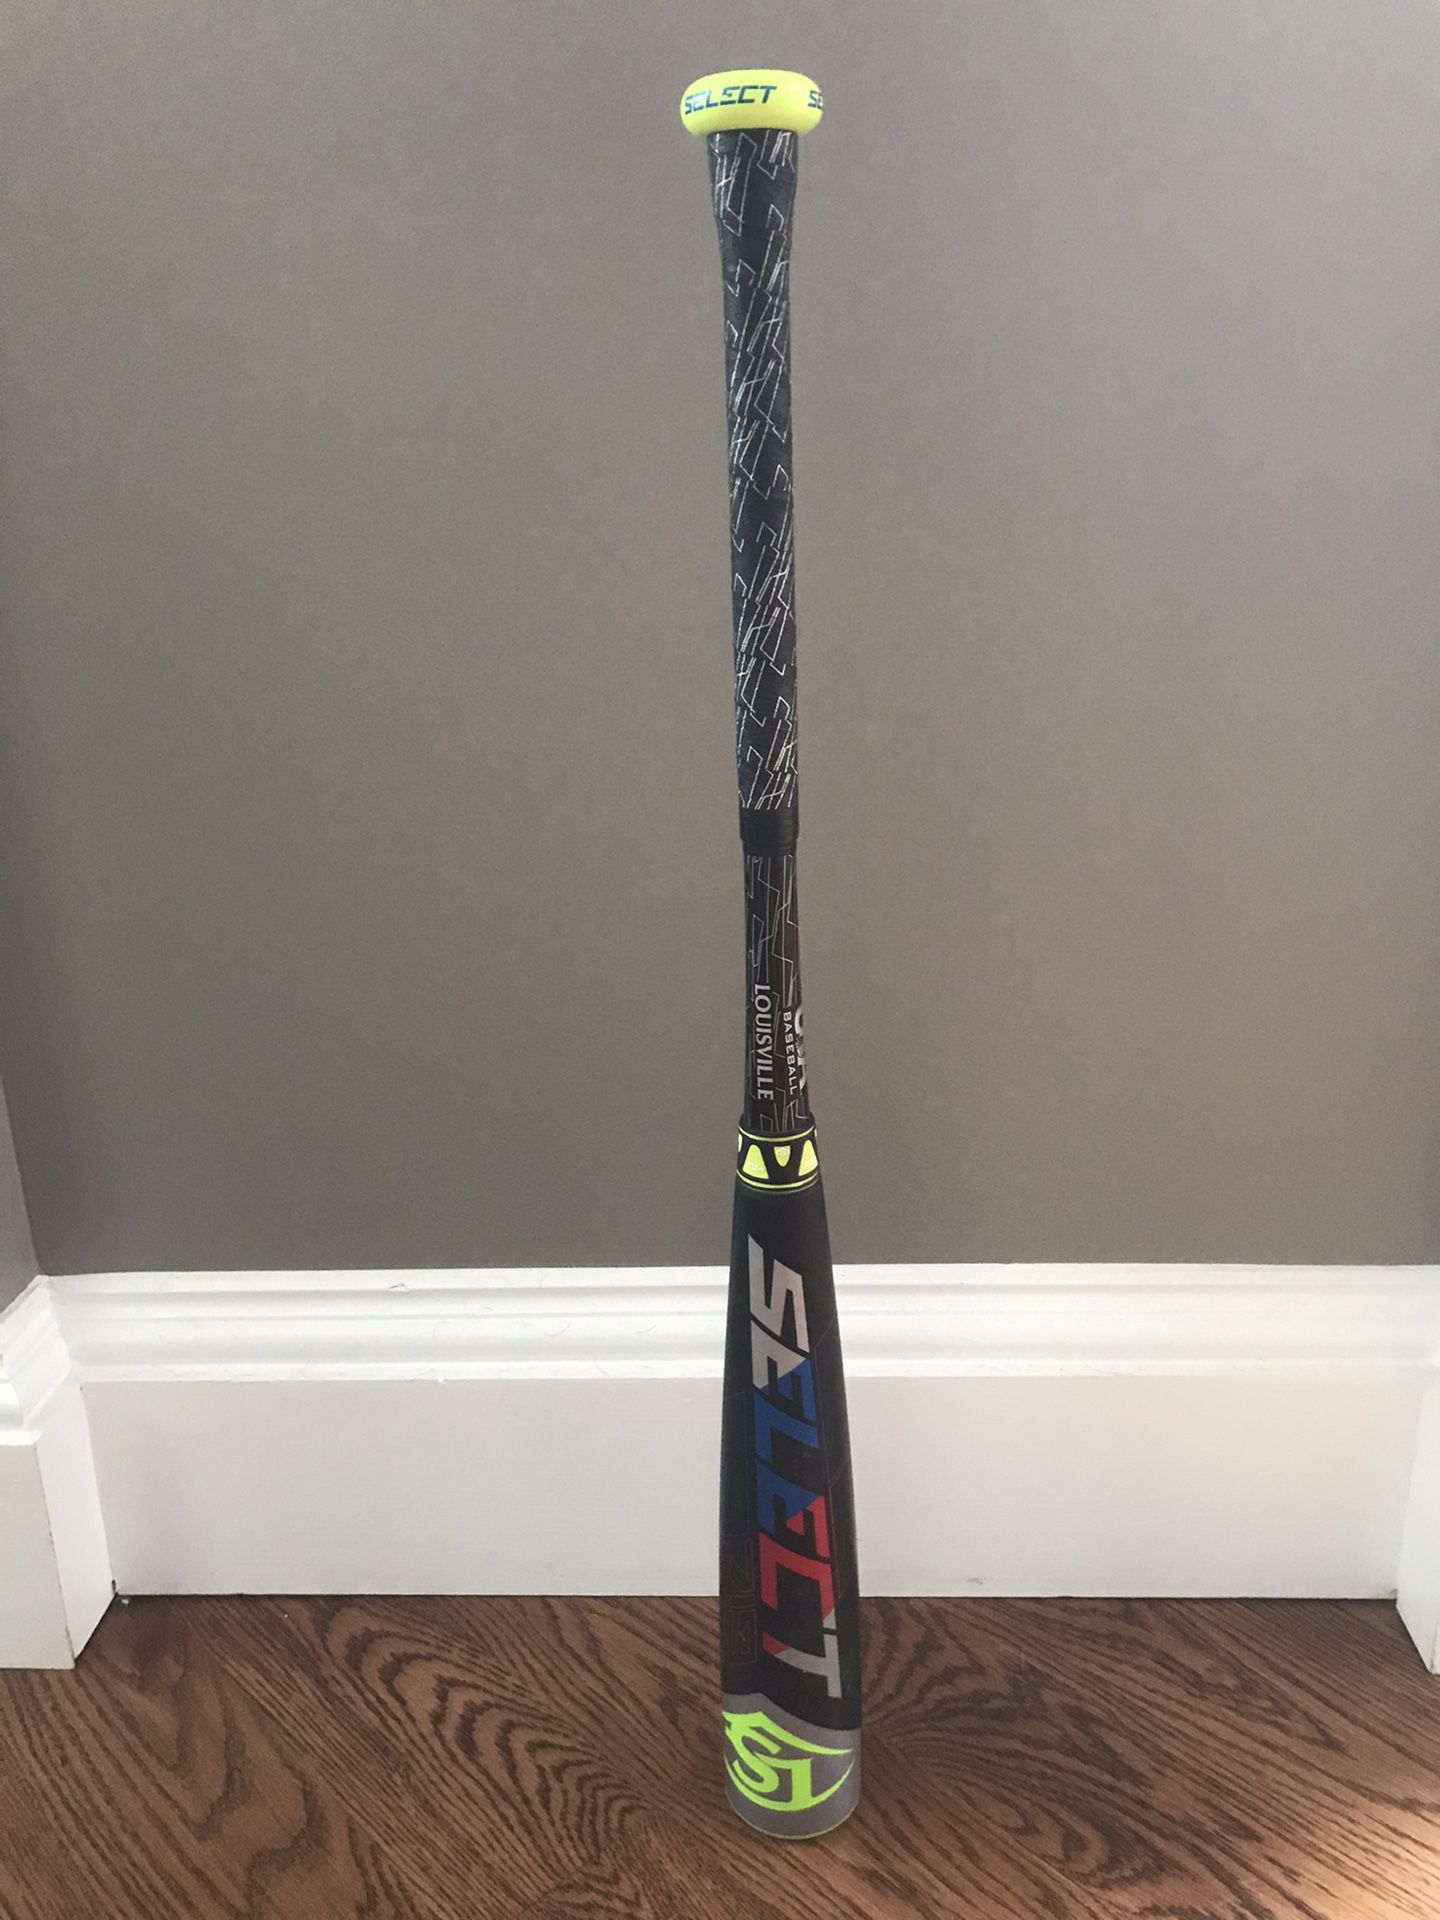 USA Louisville Slugger Select 719 Baseball Bat 29/19